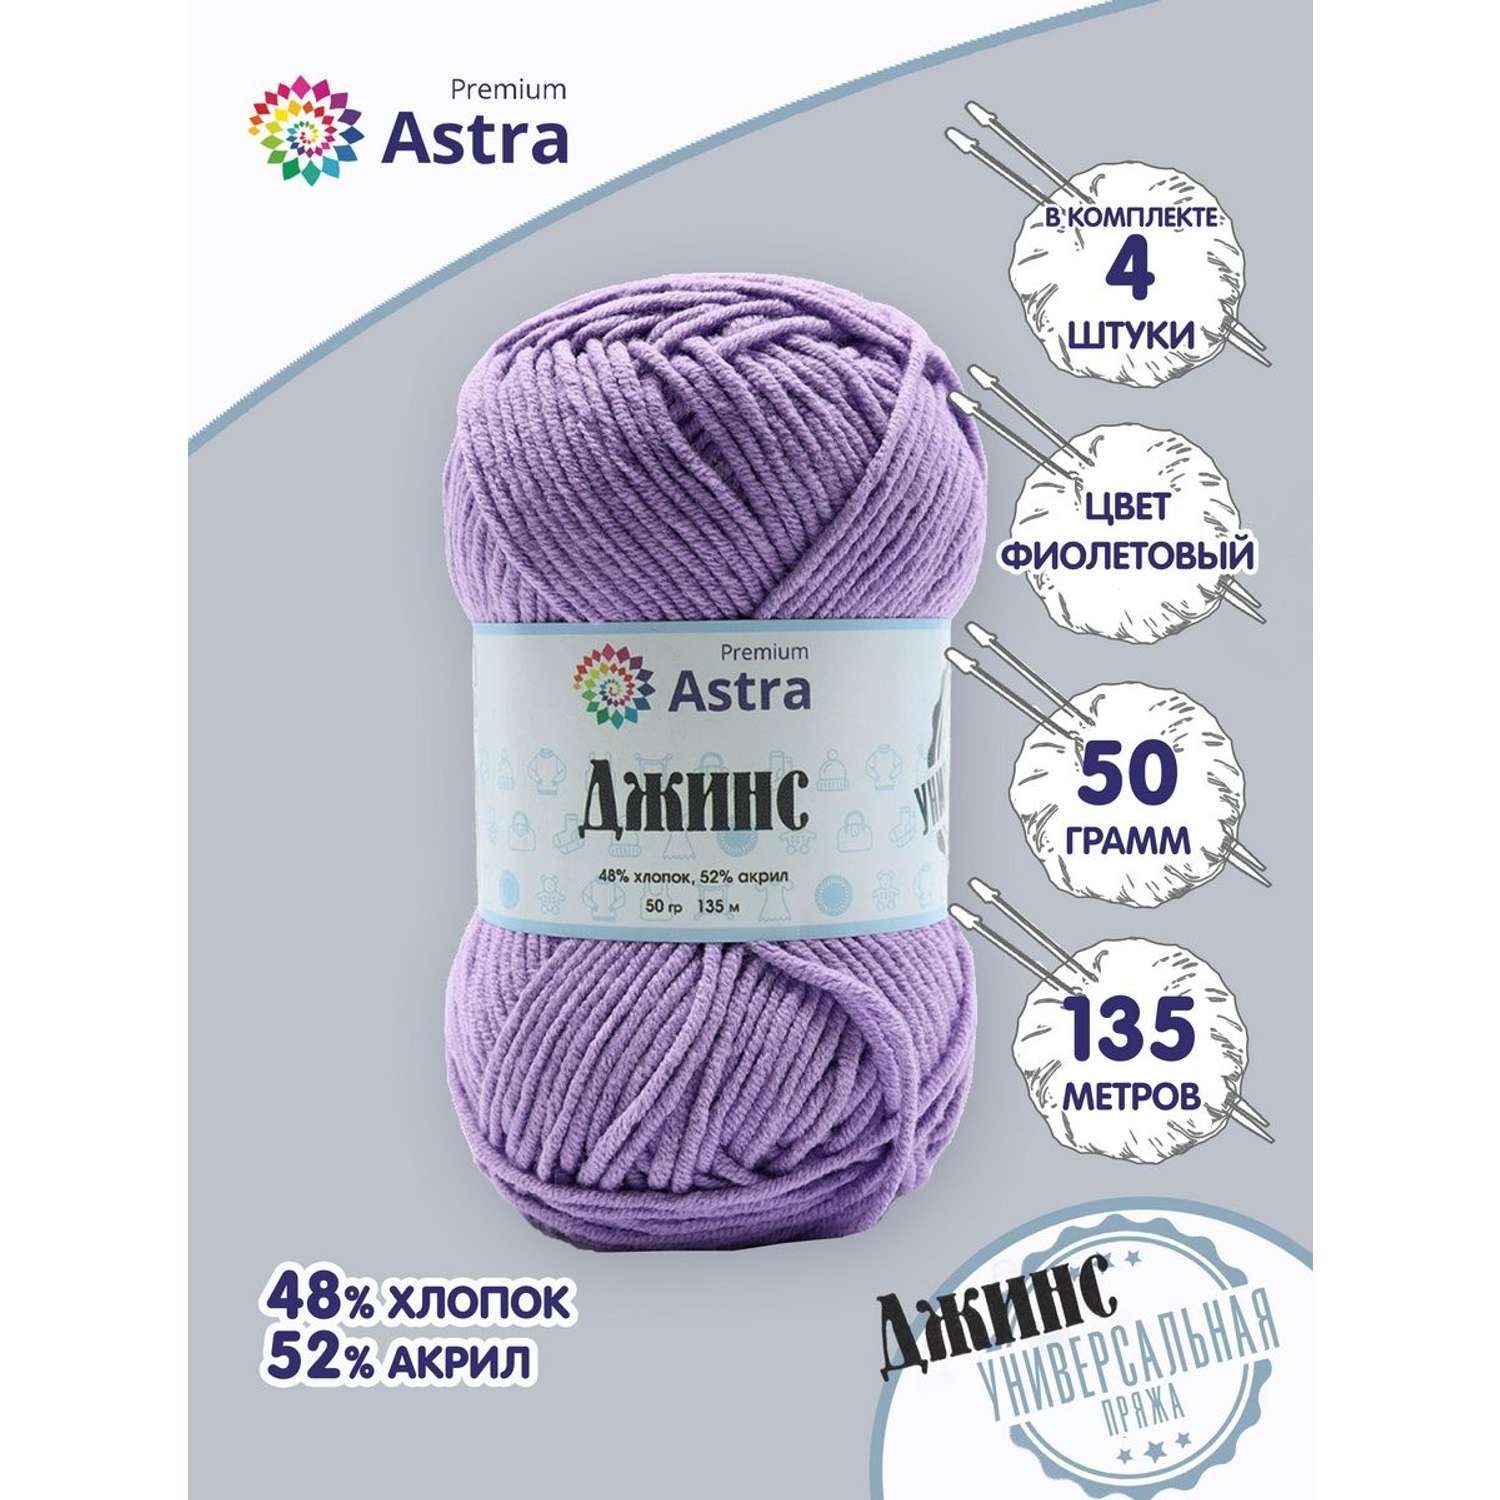 Пряжа для вязания Astra Premium джинс для повседневной одежды акрил хлопок 50 гр 135 м 750 фиолетовый 4 мотка - фото 1